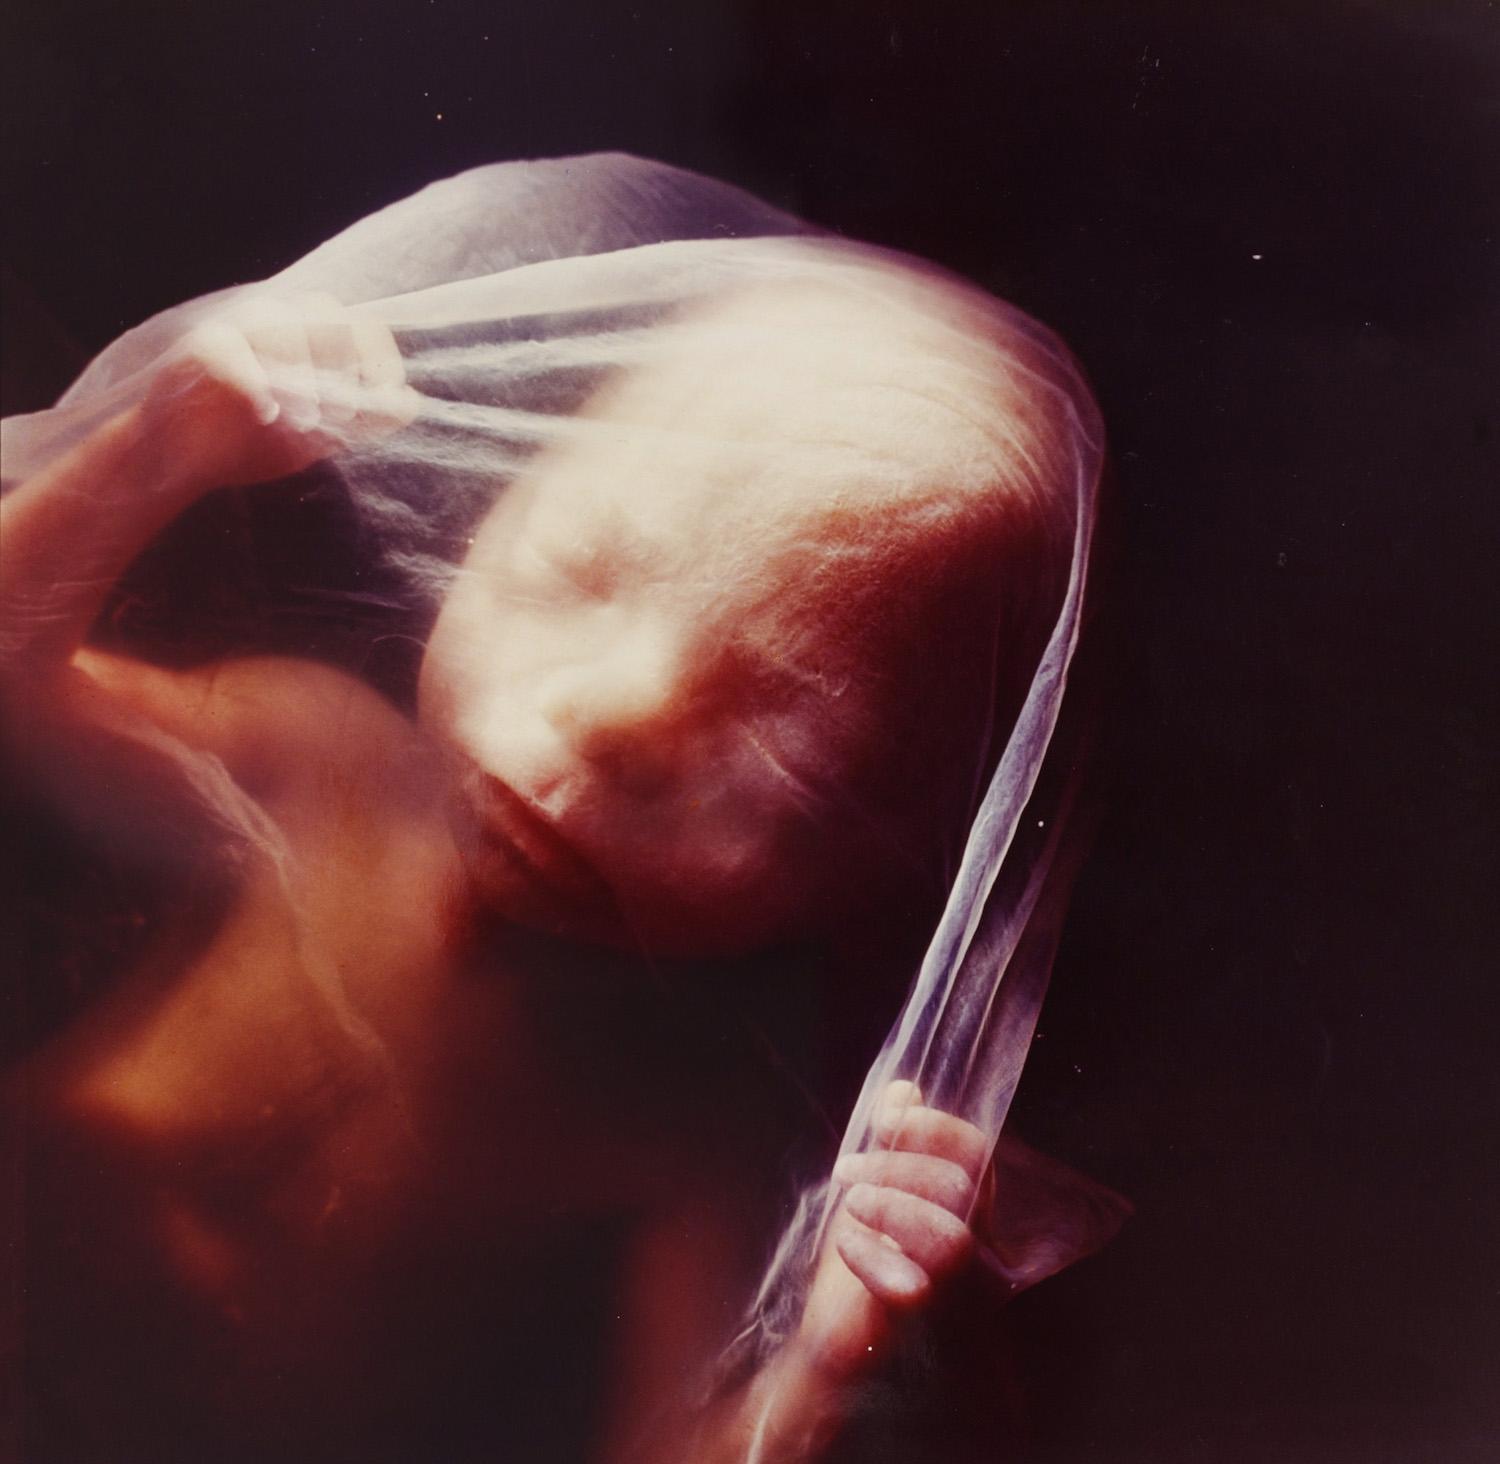 Как выглядит 23 неделя беременности. Эмбрион Леннарт Нильсон. Эмбрион 18 недель Леннарт Нильссон. "Зародыш, 18 недель", Леннарт Нильсон, 1965..